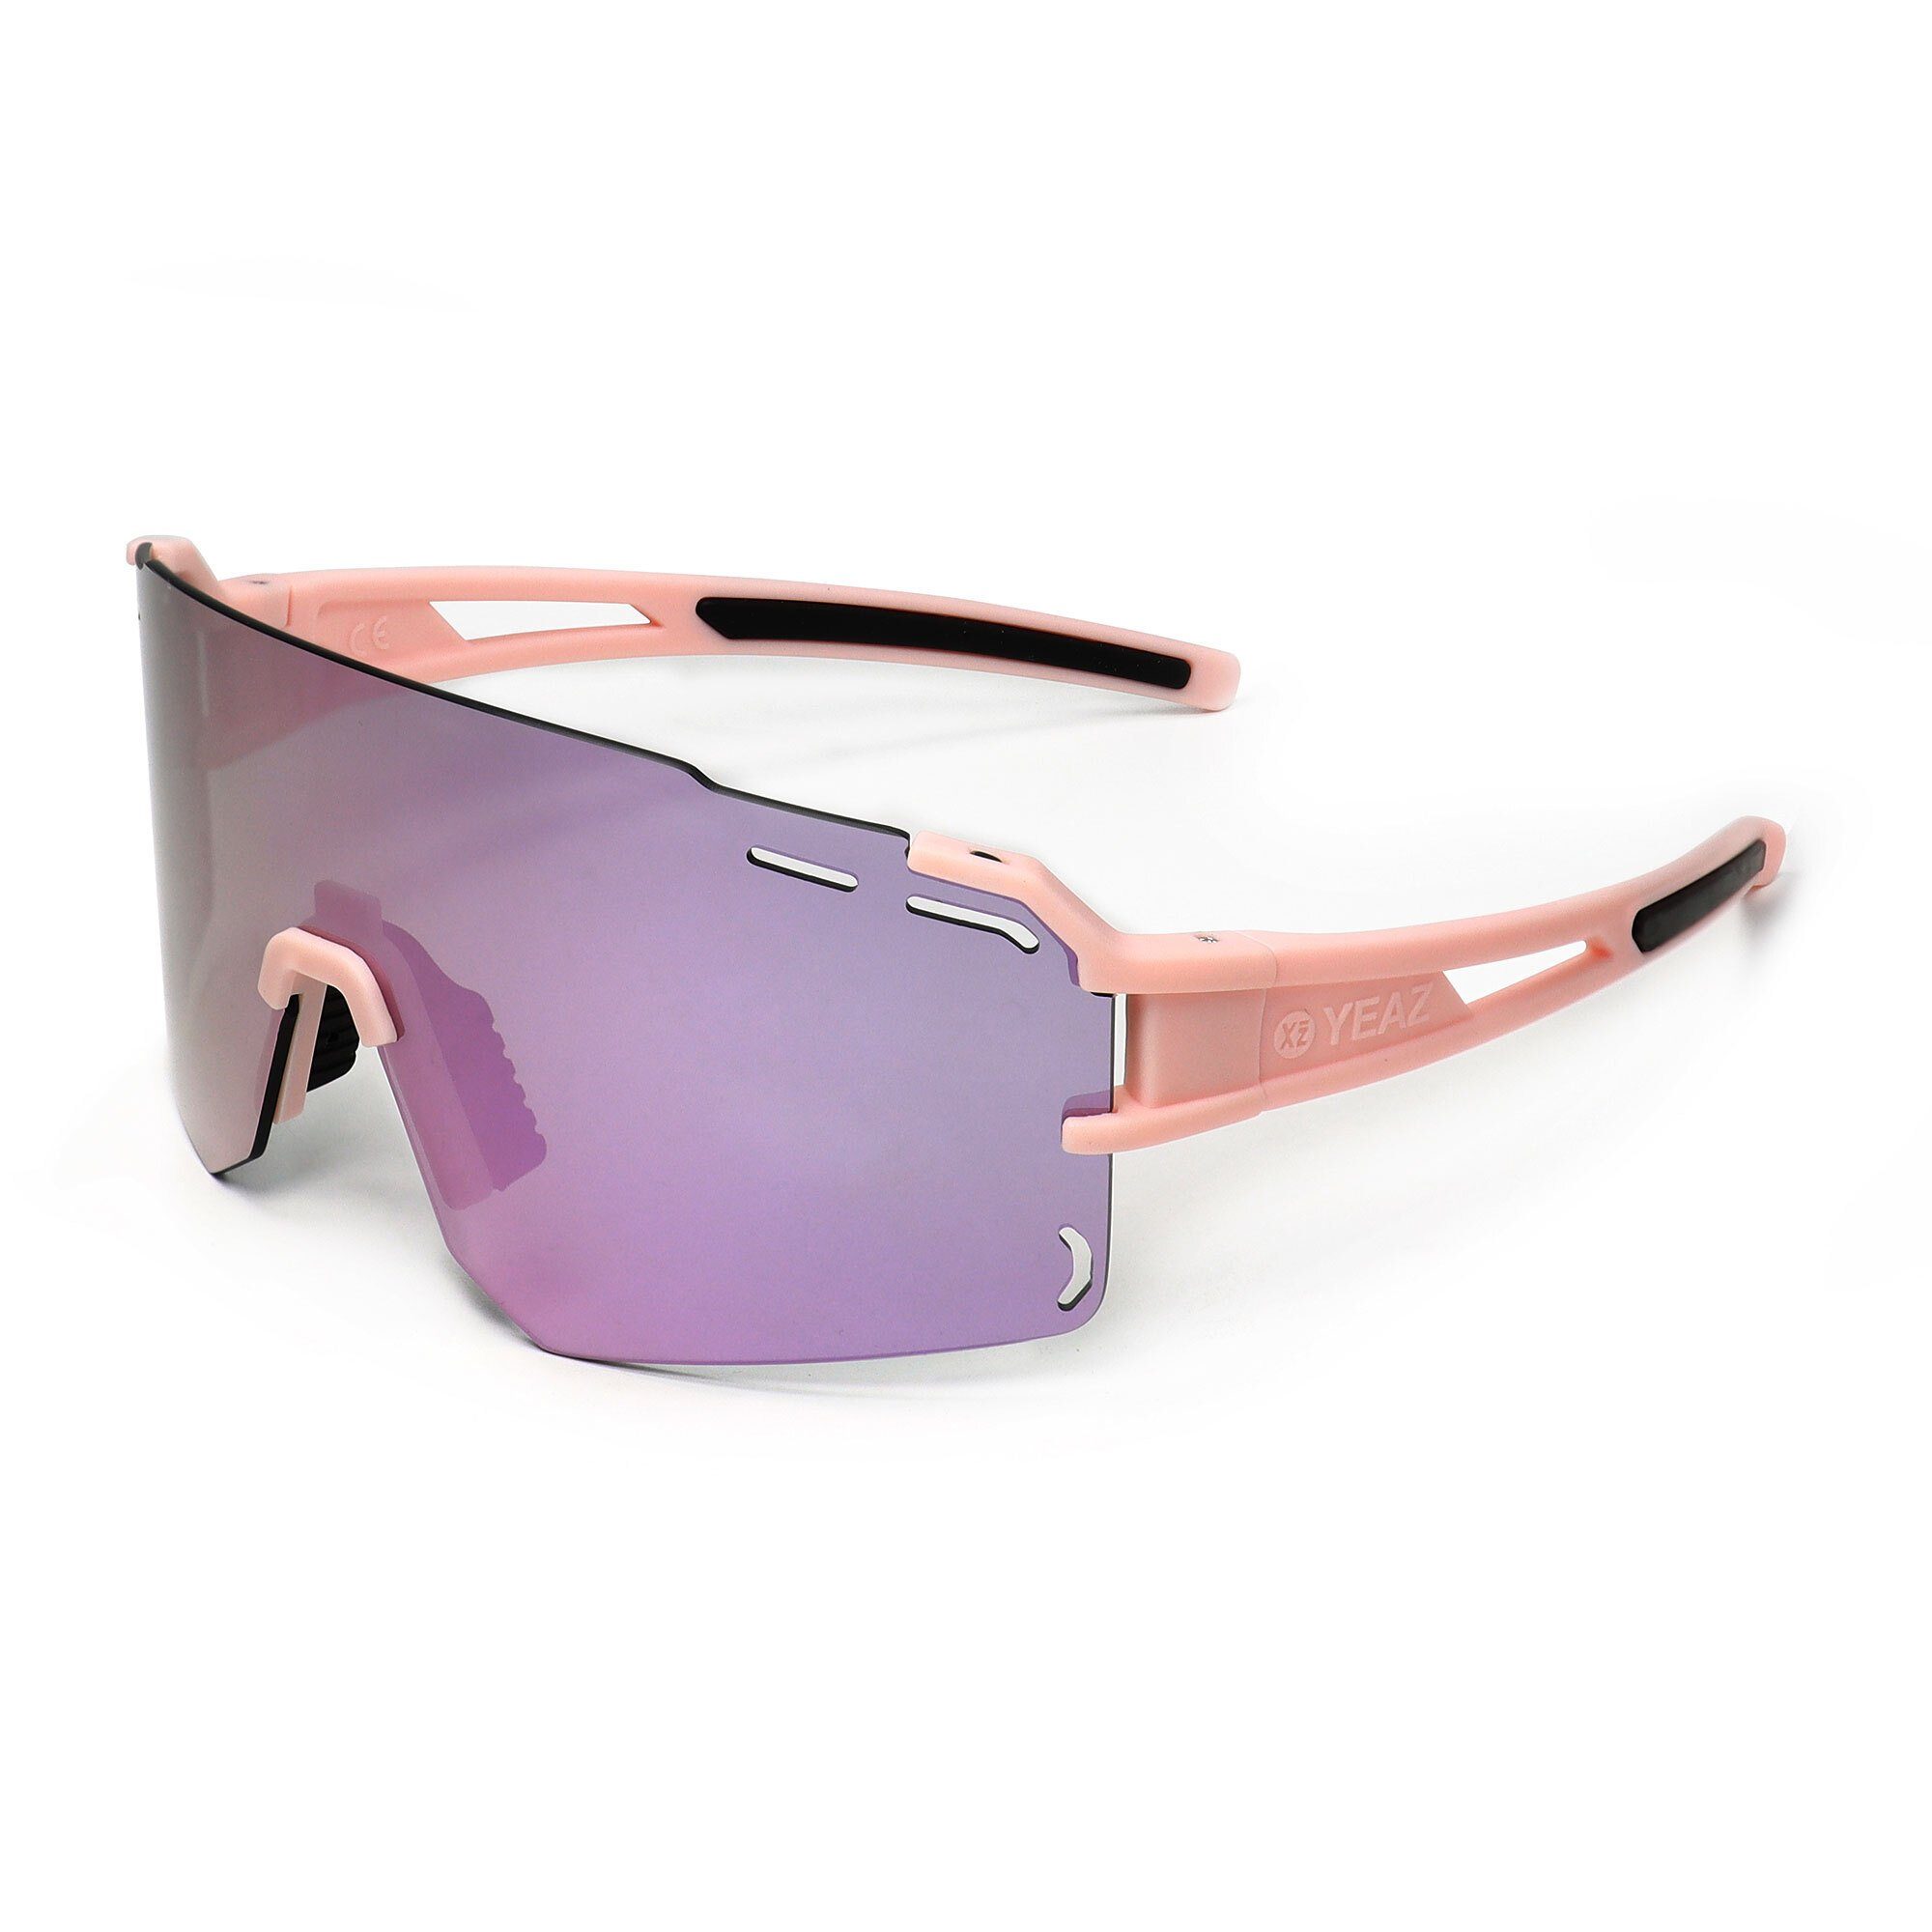 YEAZ Sportbrille SUNCRUISE sport-sonnenbrille grün, pink lila Sport-Sonnenbrille 